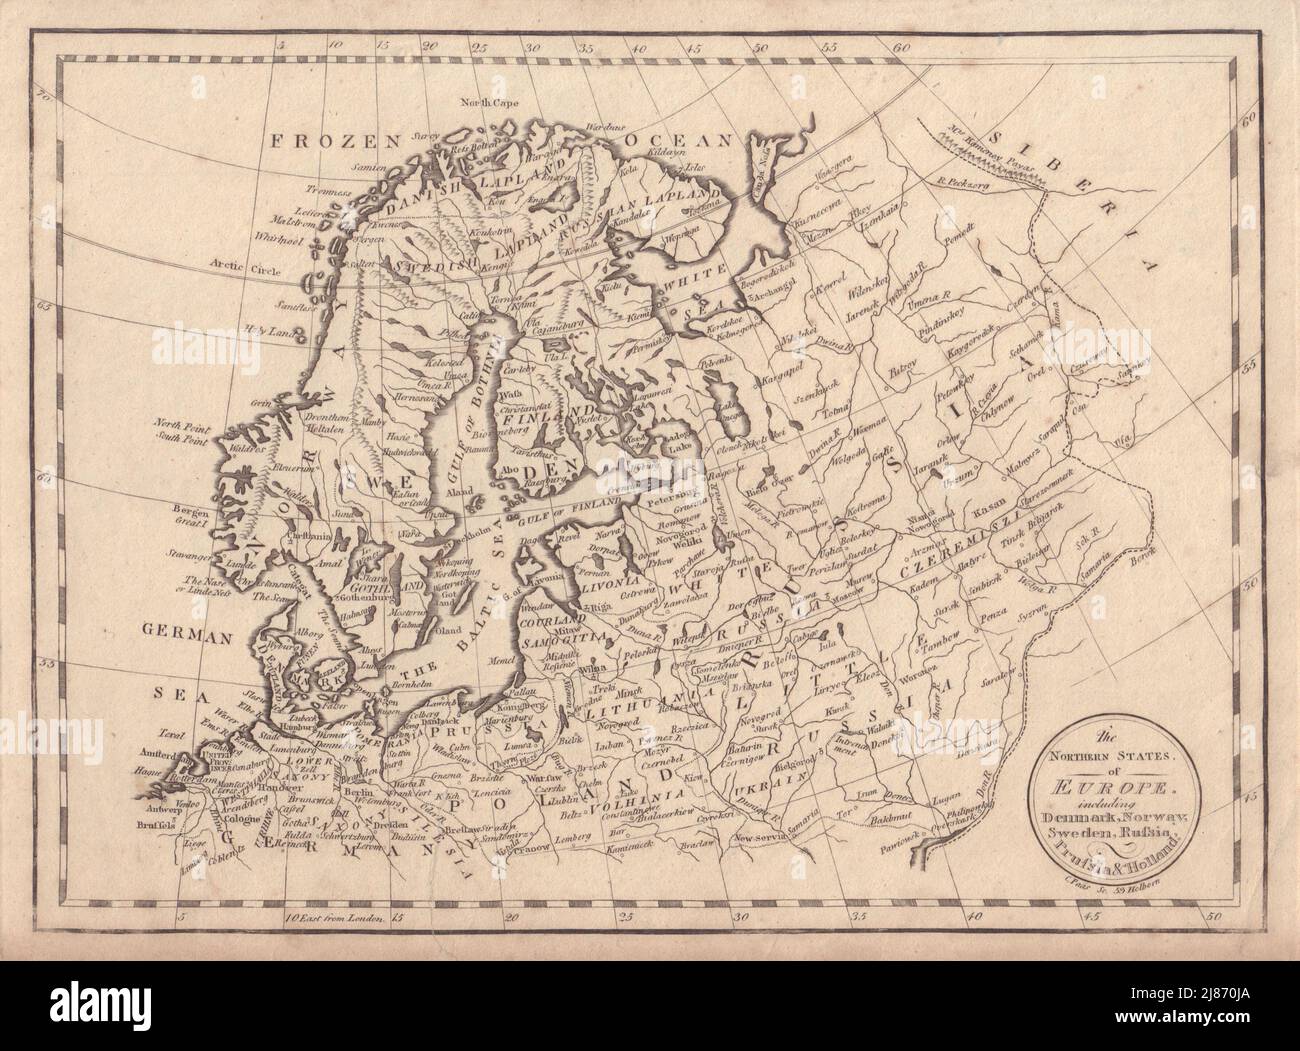 Nördliche Staaten von Europa… Dänemark Norwegen Schweden Russland Preußen. PAAS 1800-Karte Stockfoto